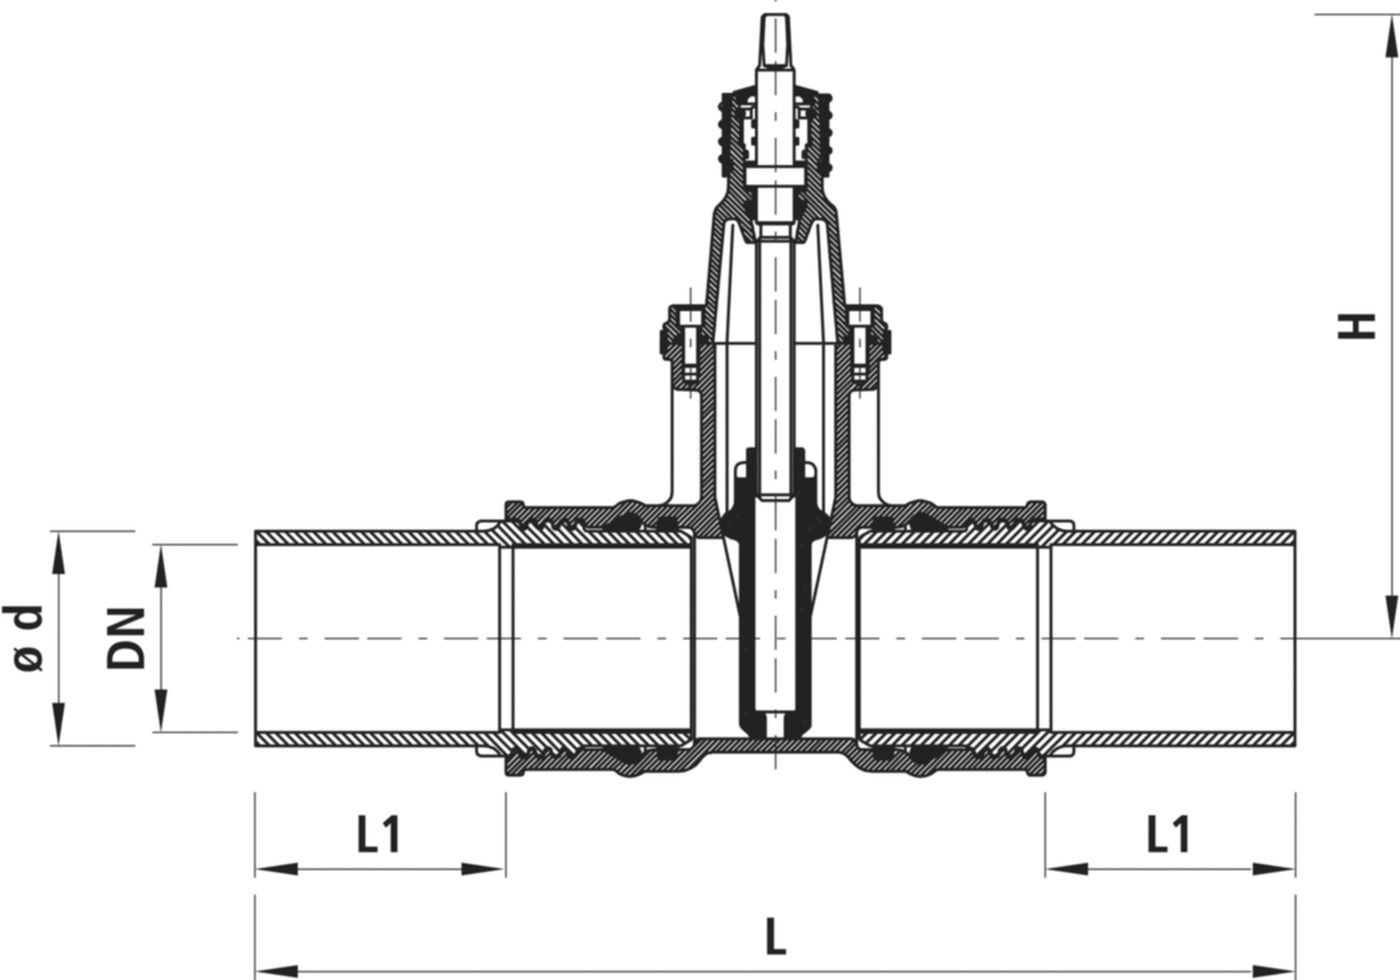 Einschweiss-Schieber für Gas S8 4816 DN 100 / d 110mm - Hawle Armaturen